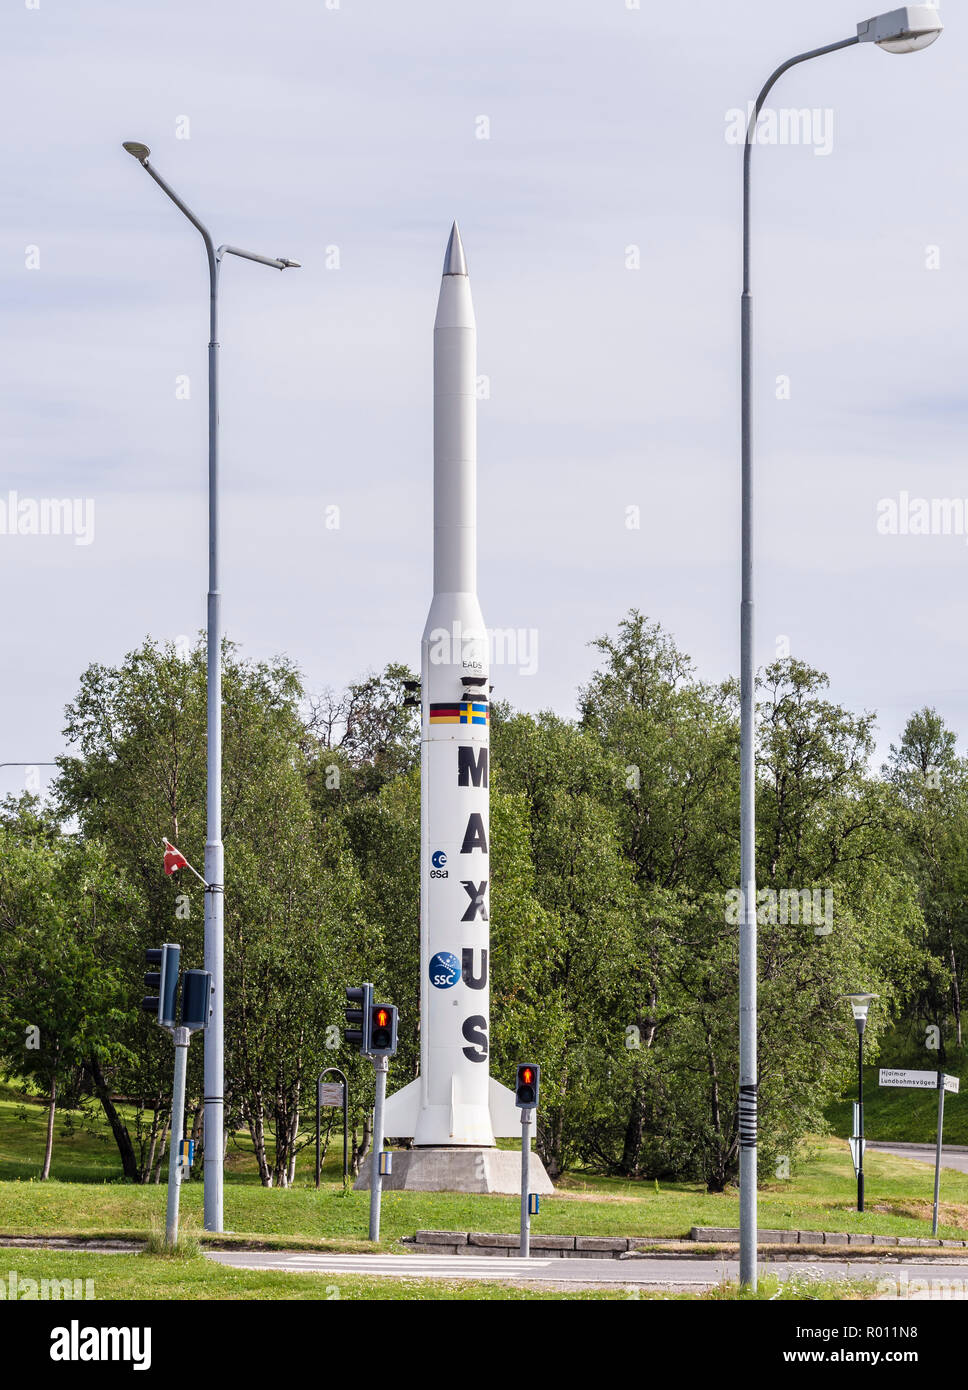 Rakete in der europäischen Forschung Programm der ESA, Kiruna Kirche in der Rückseite, Park in Kiruna, Schweden Stockfoto